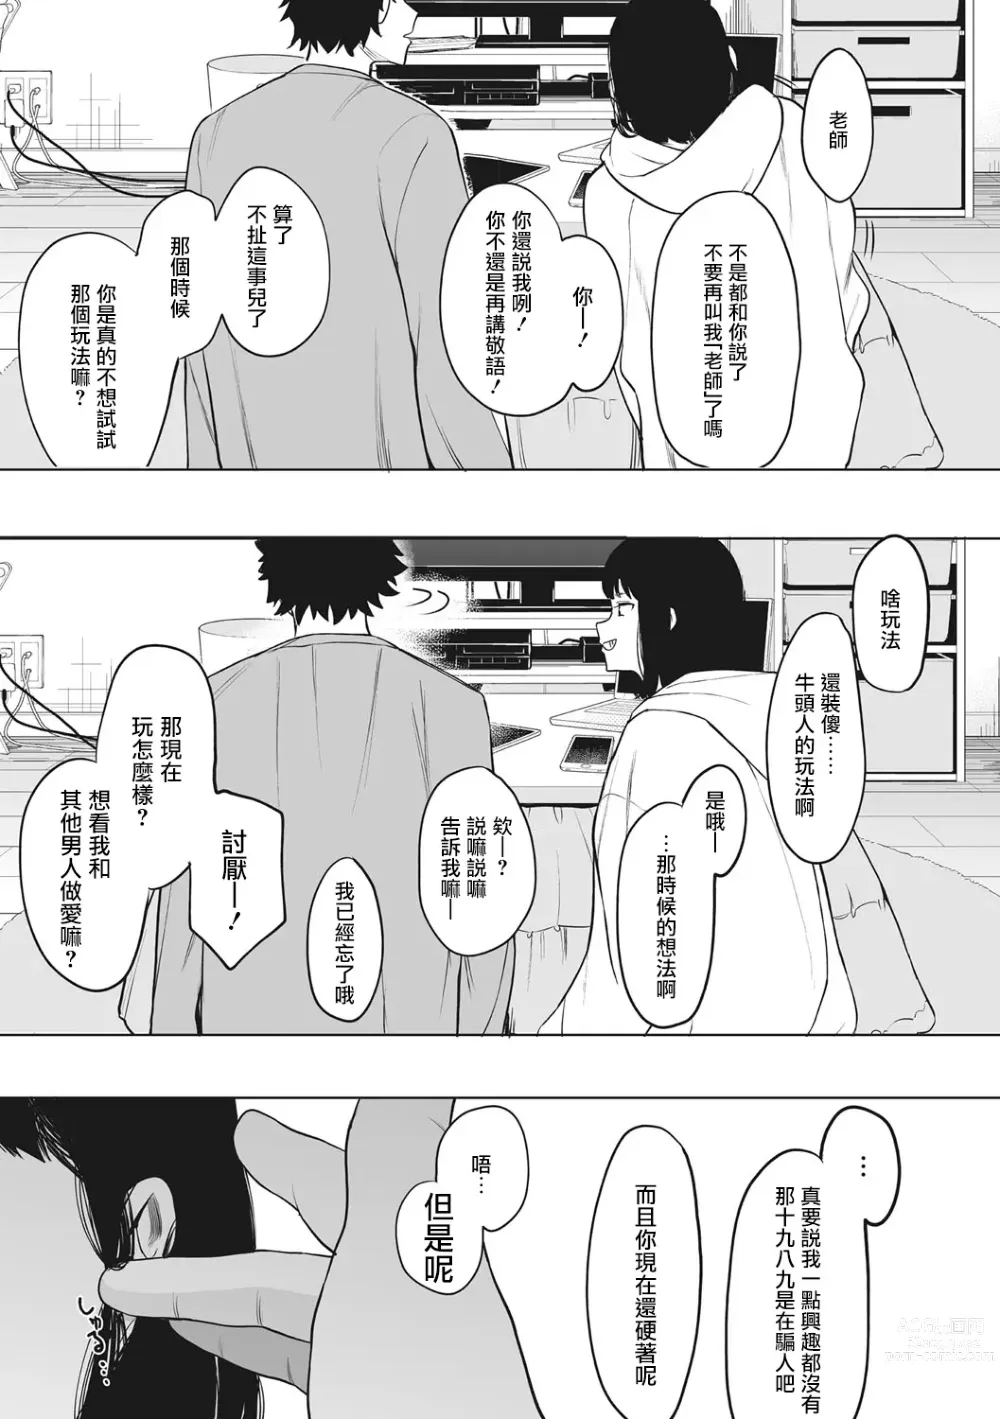 Page 207 of manga 托八男老師的福交到女朋友啦！